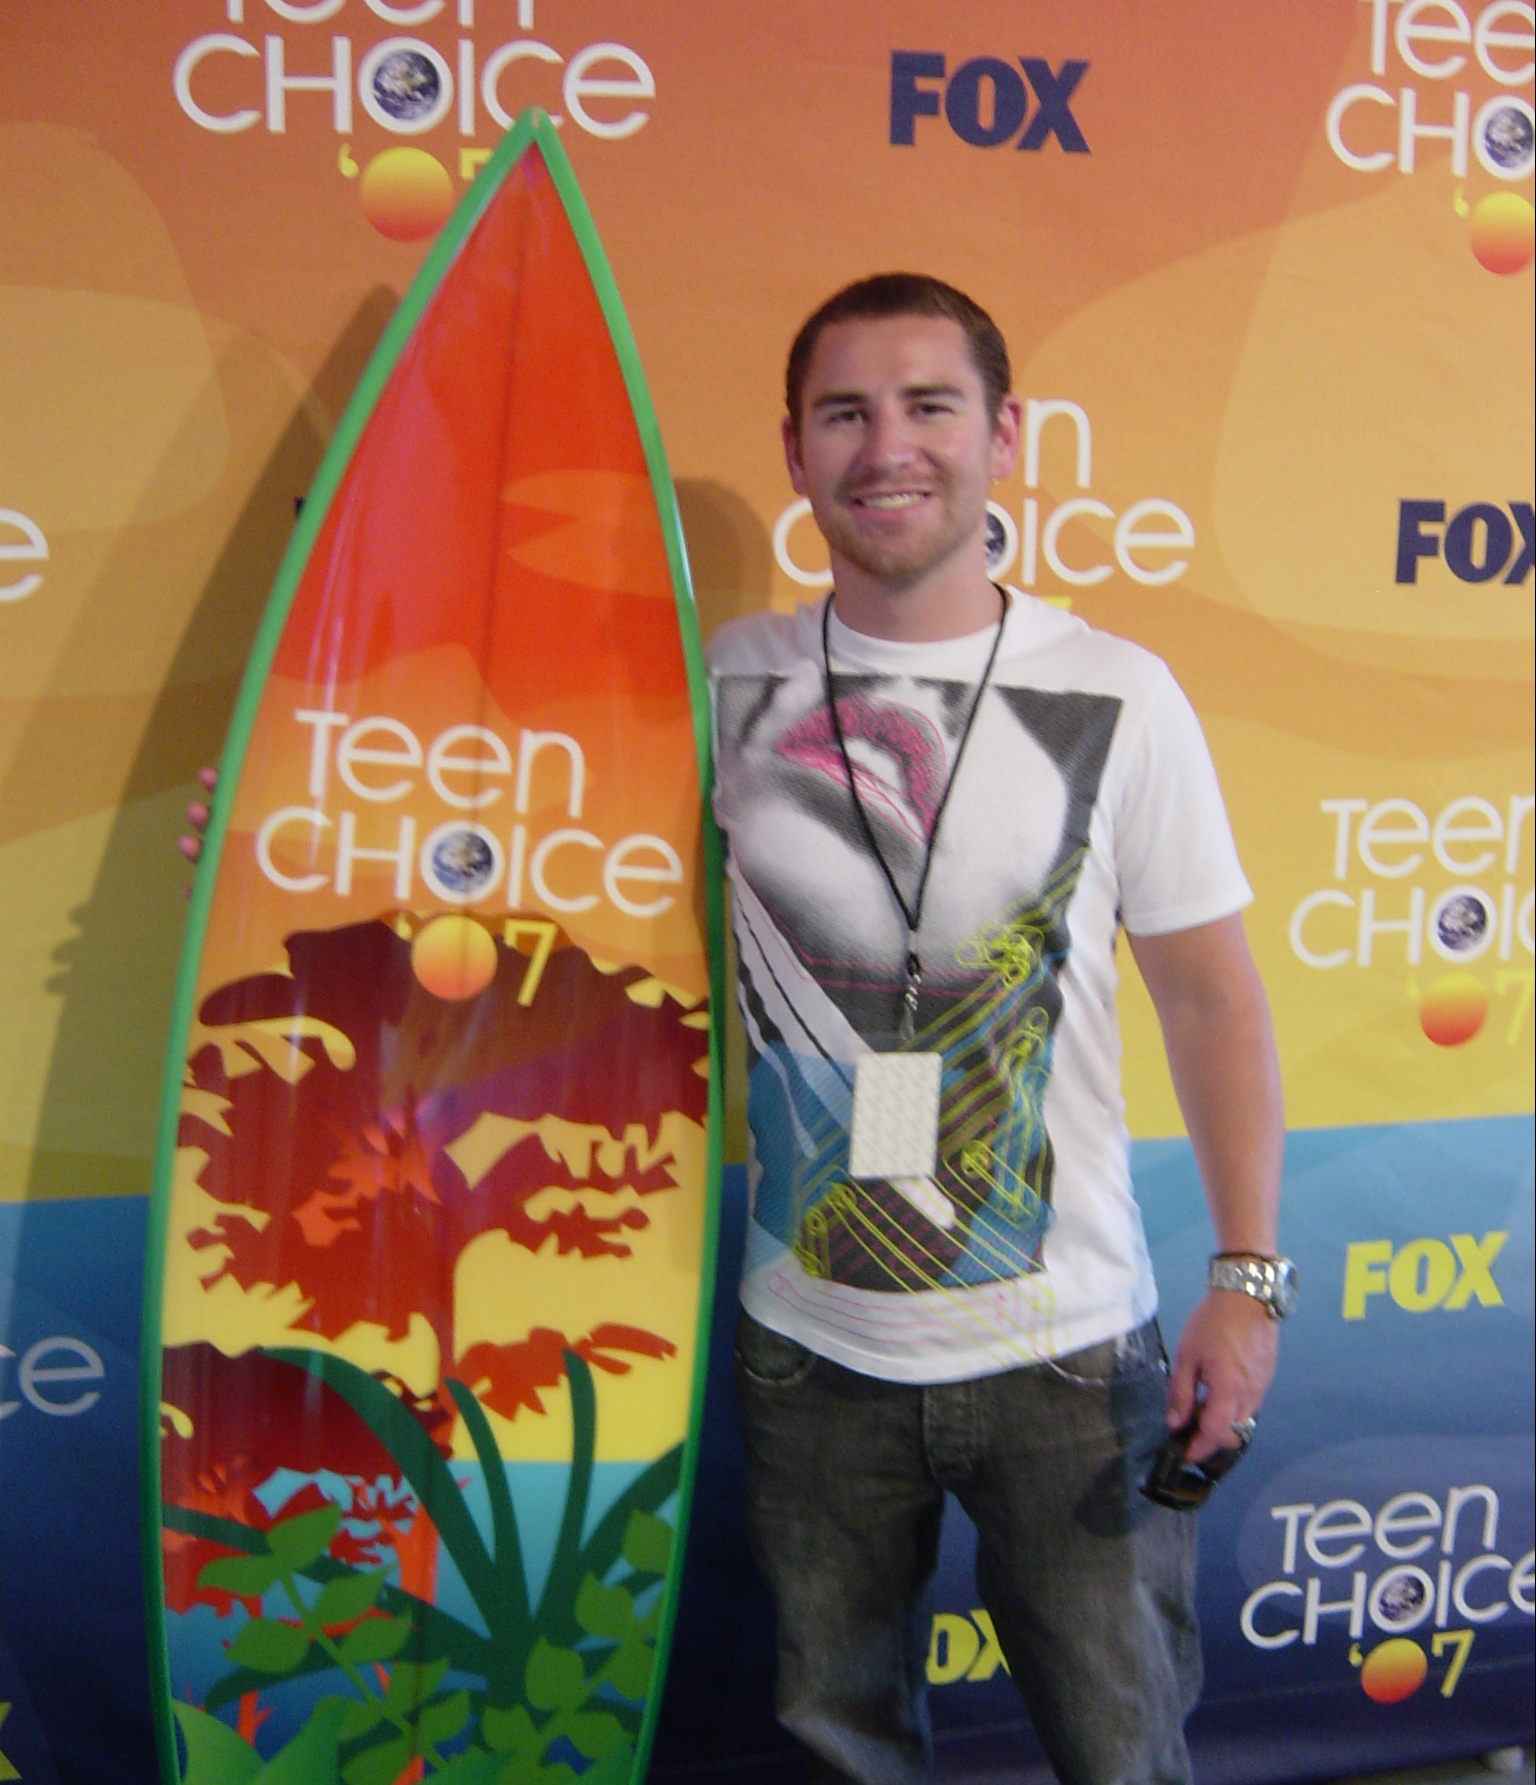 Teen Choice Awards 2007-Arrivals